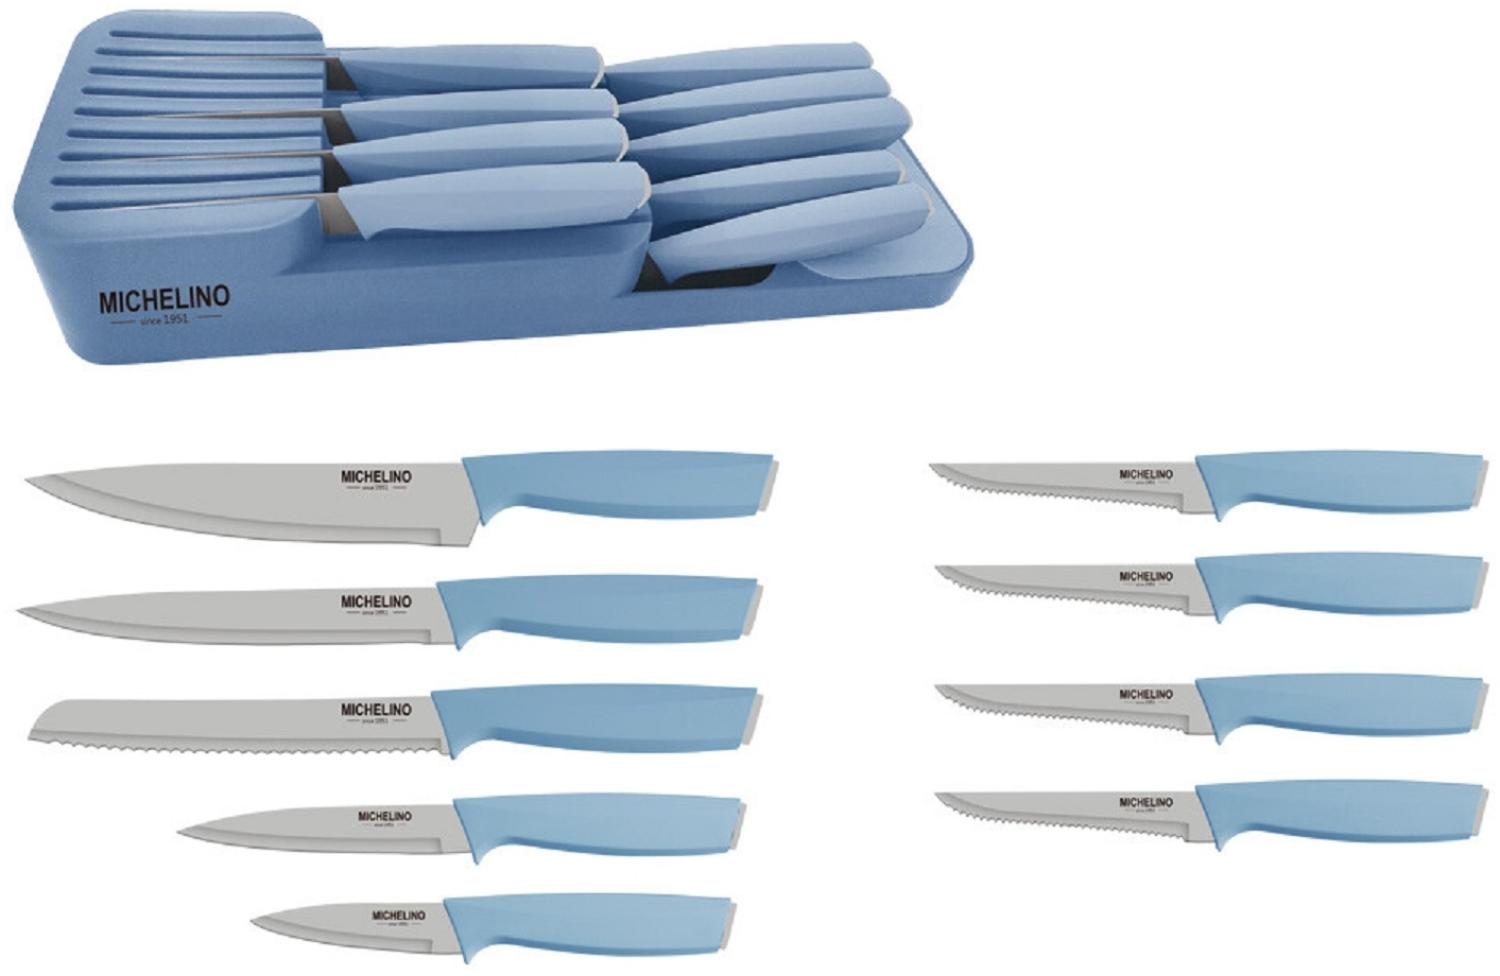 MICHELINO Praktisches 10-teiliges Messerorganizer-Set: Serie Alythia für geordnete Küchen Blau Bild 1